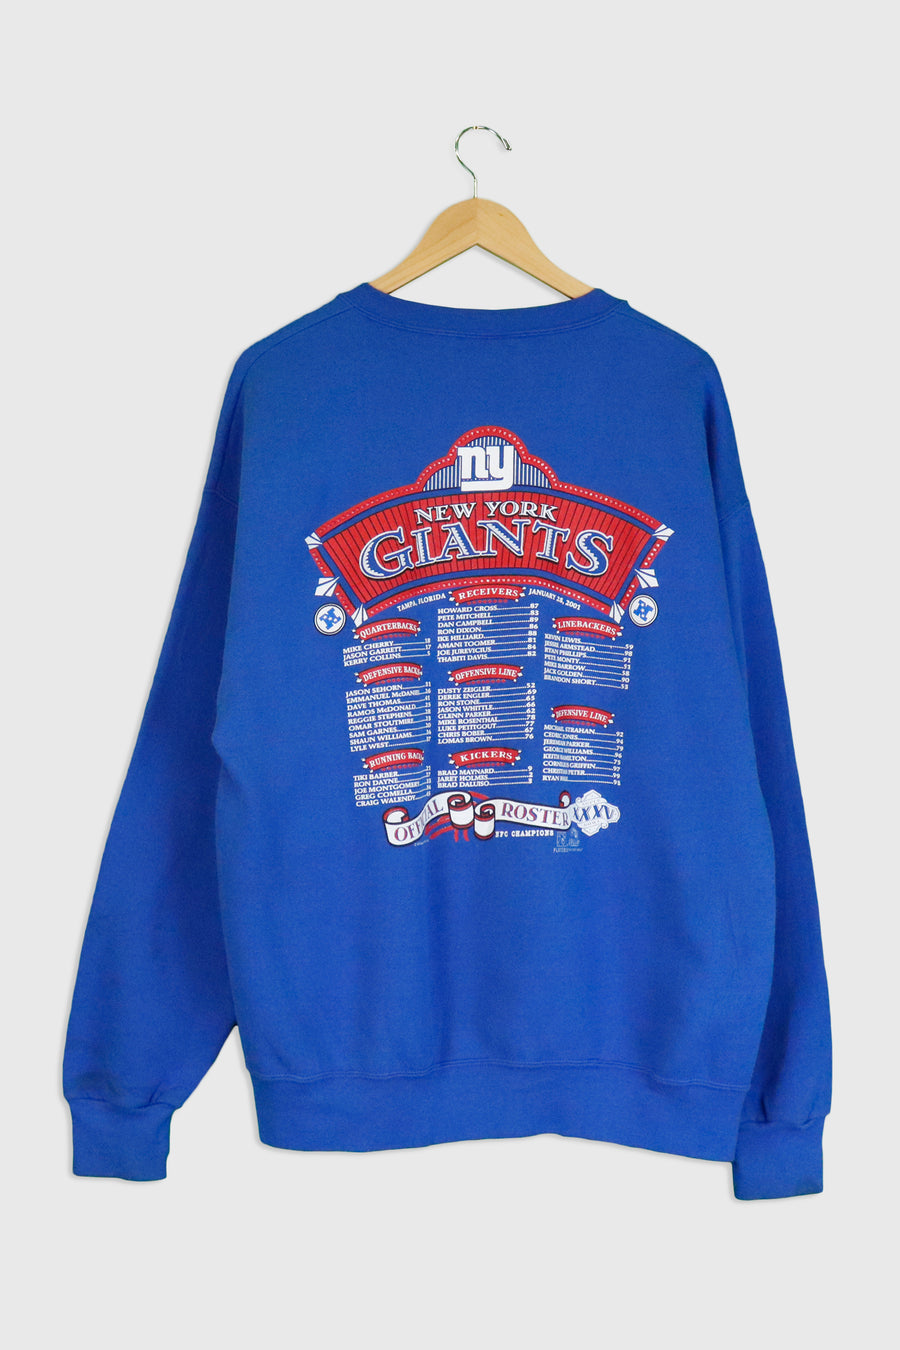 Vintage 2000 NFC NY Giants Champions Vinyl Sweatshirt Sz XL